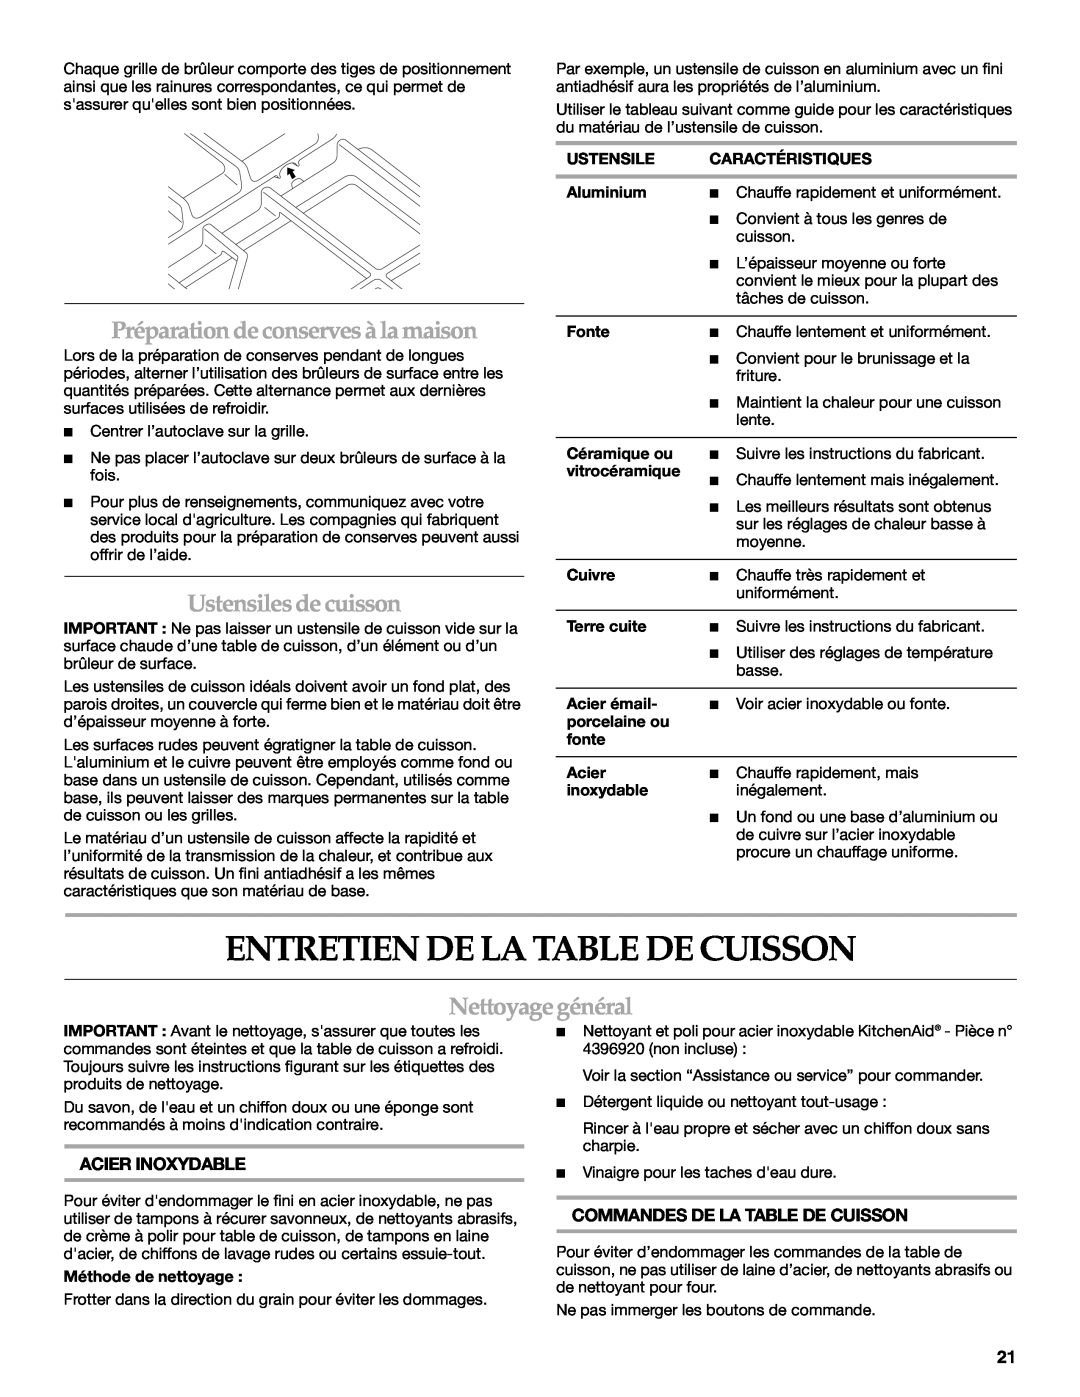 KitchenAid KFGU766, KFGS306 manual Entretien De La Table De Cuisson, Préparationdeconservesà lamaison, Ustensiles de cuisson 